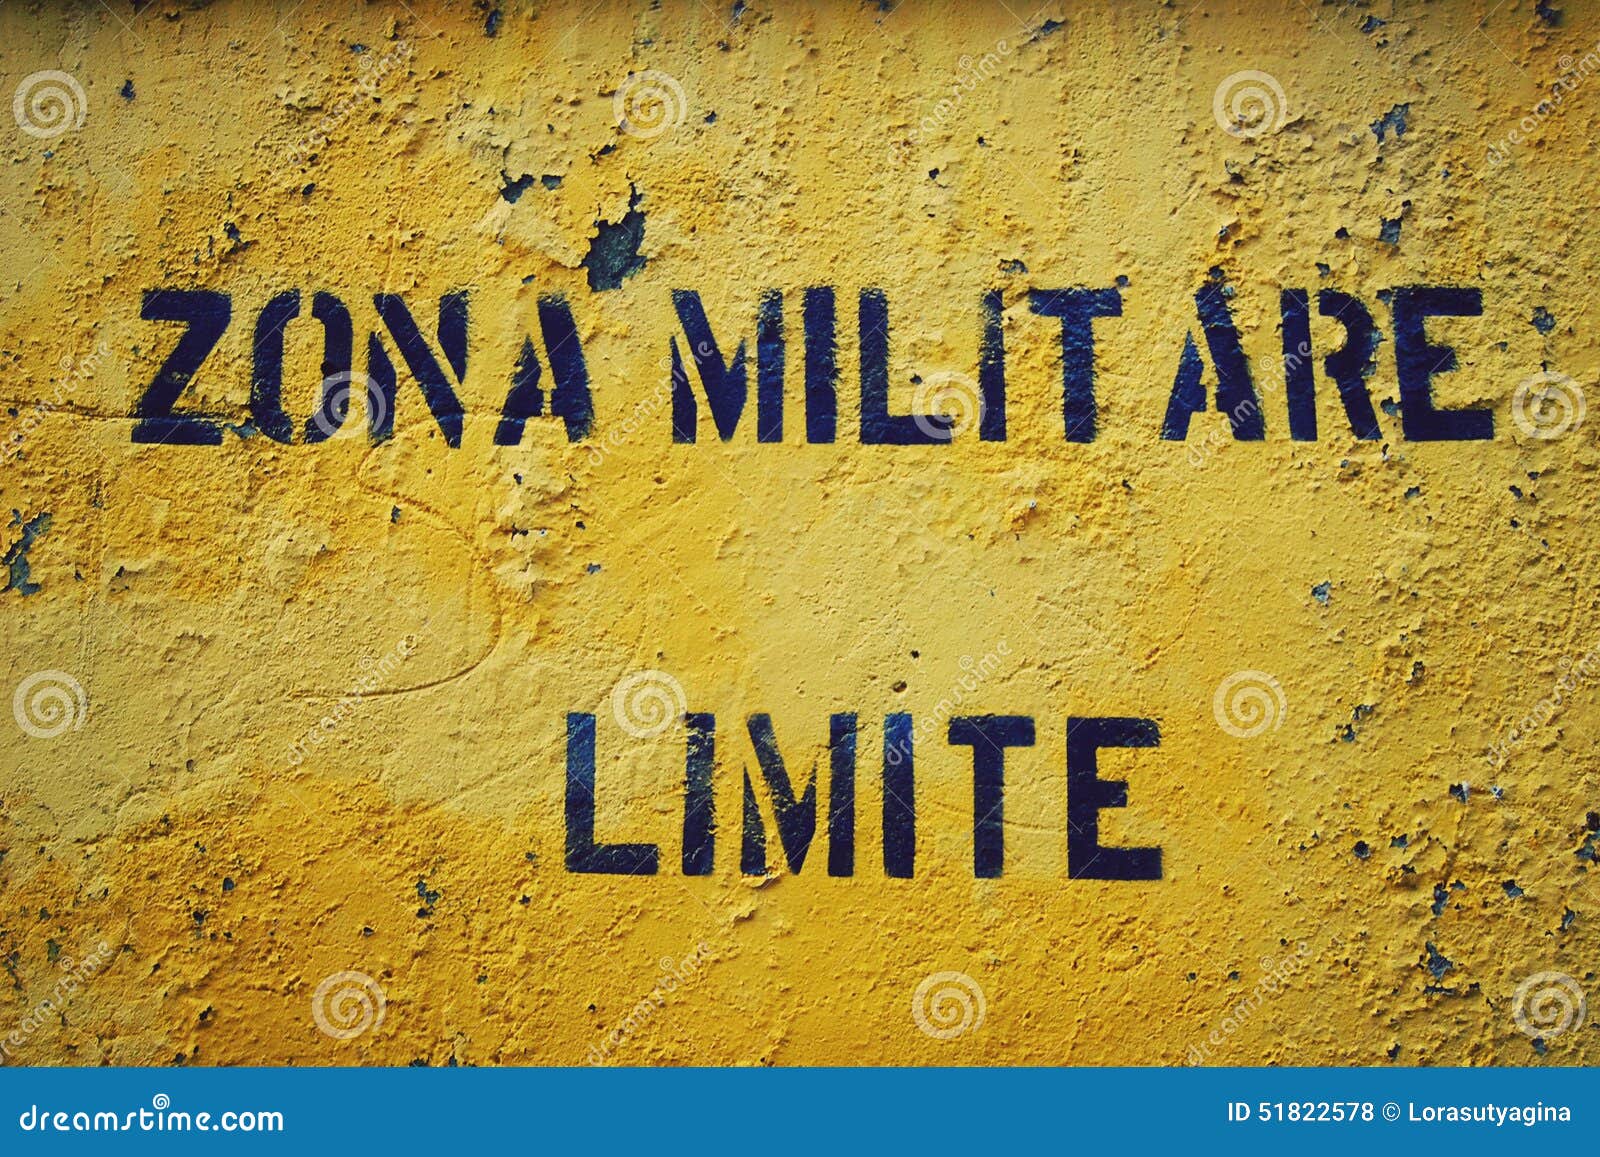 yellow sign 'zona militare limite' in italian city gaeta.